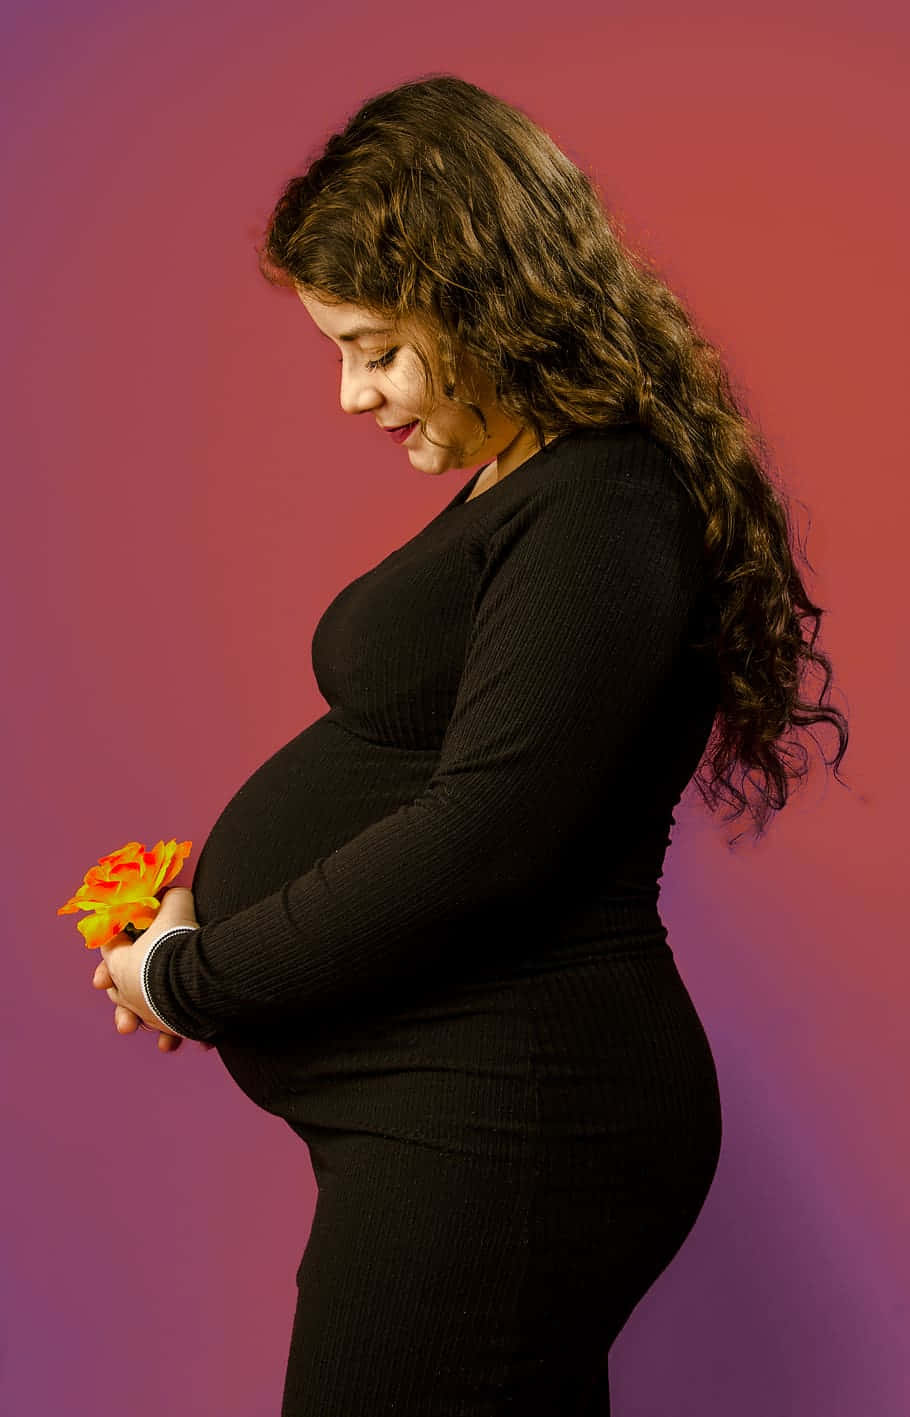 Abbracciandoil Viaggio Con Gioia: Un'immagine Affettuosa Di Maternità Con Una Donna In Attesa Che Splende Di Felicità.